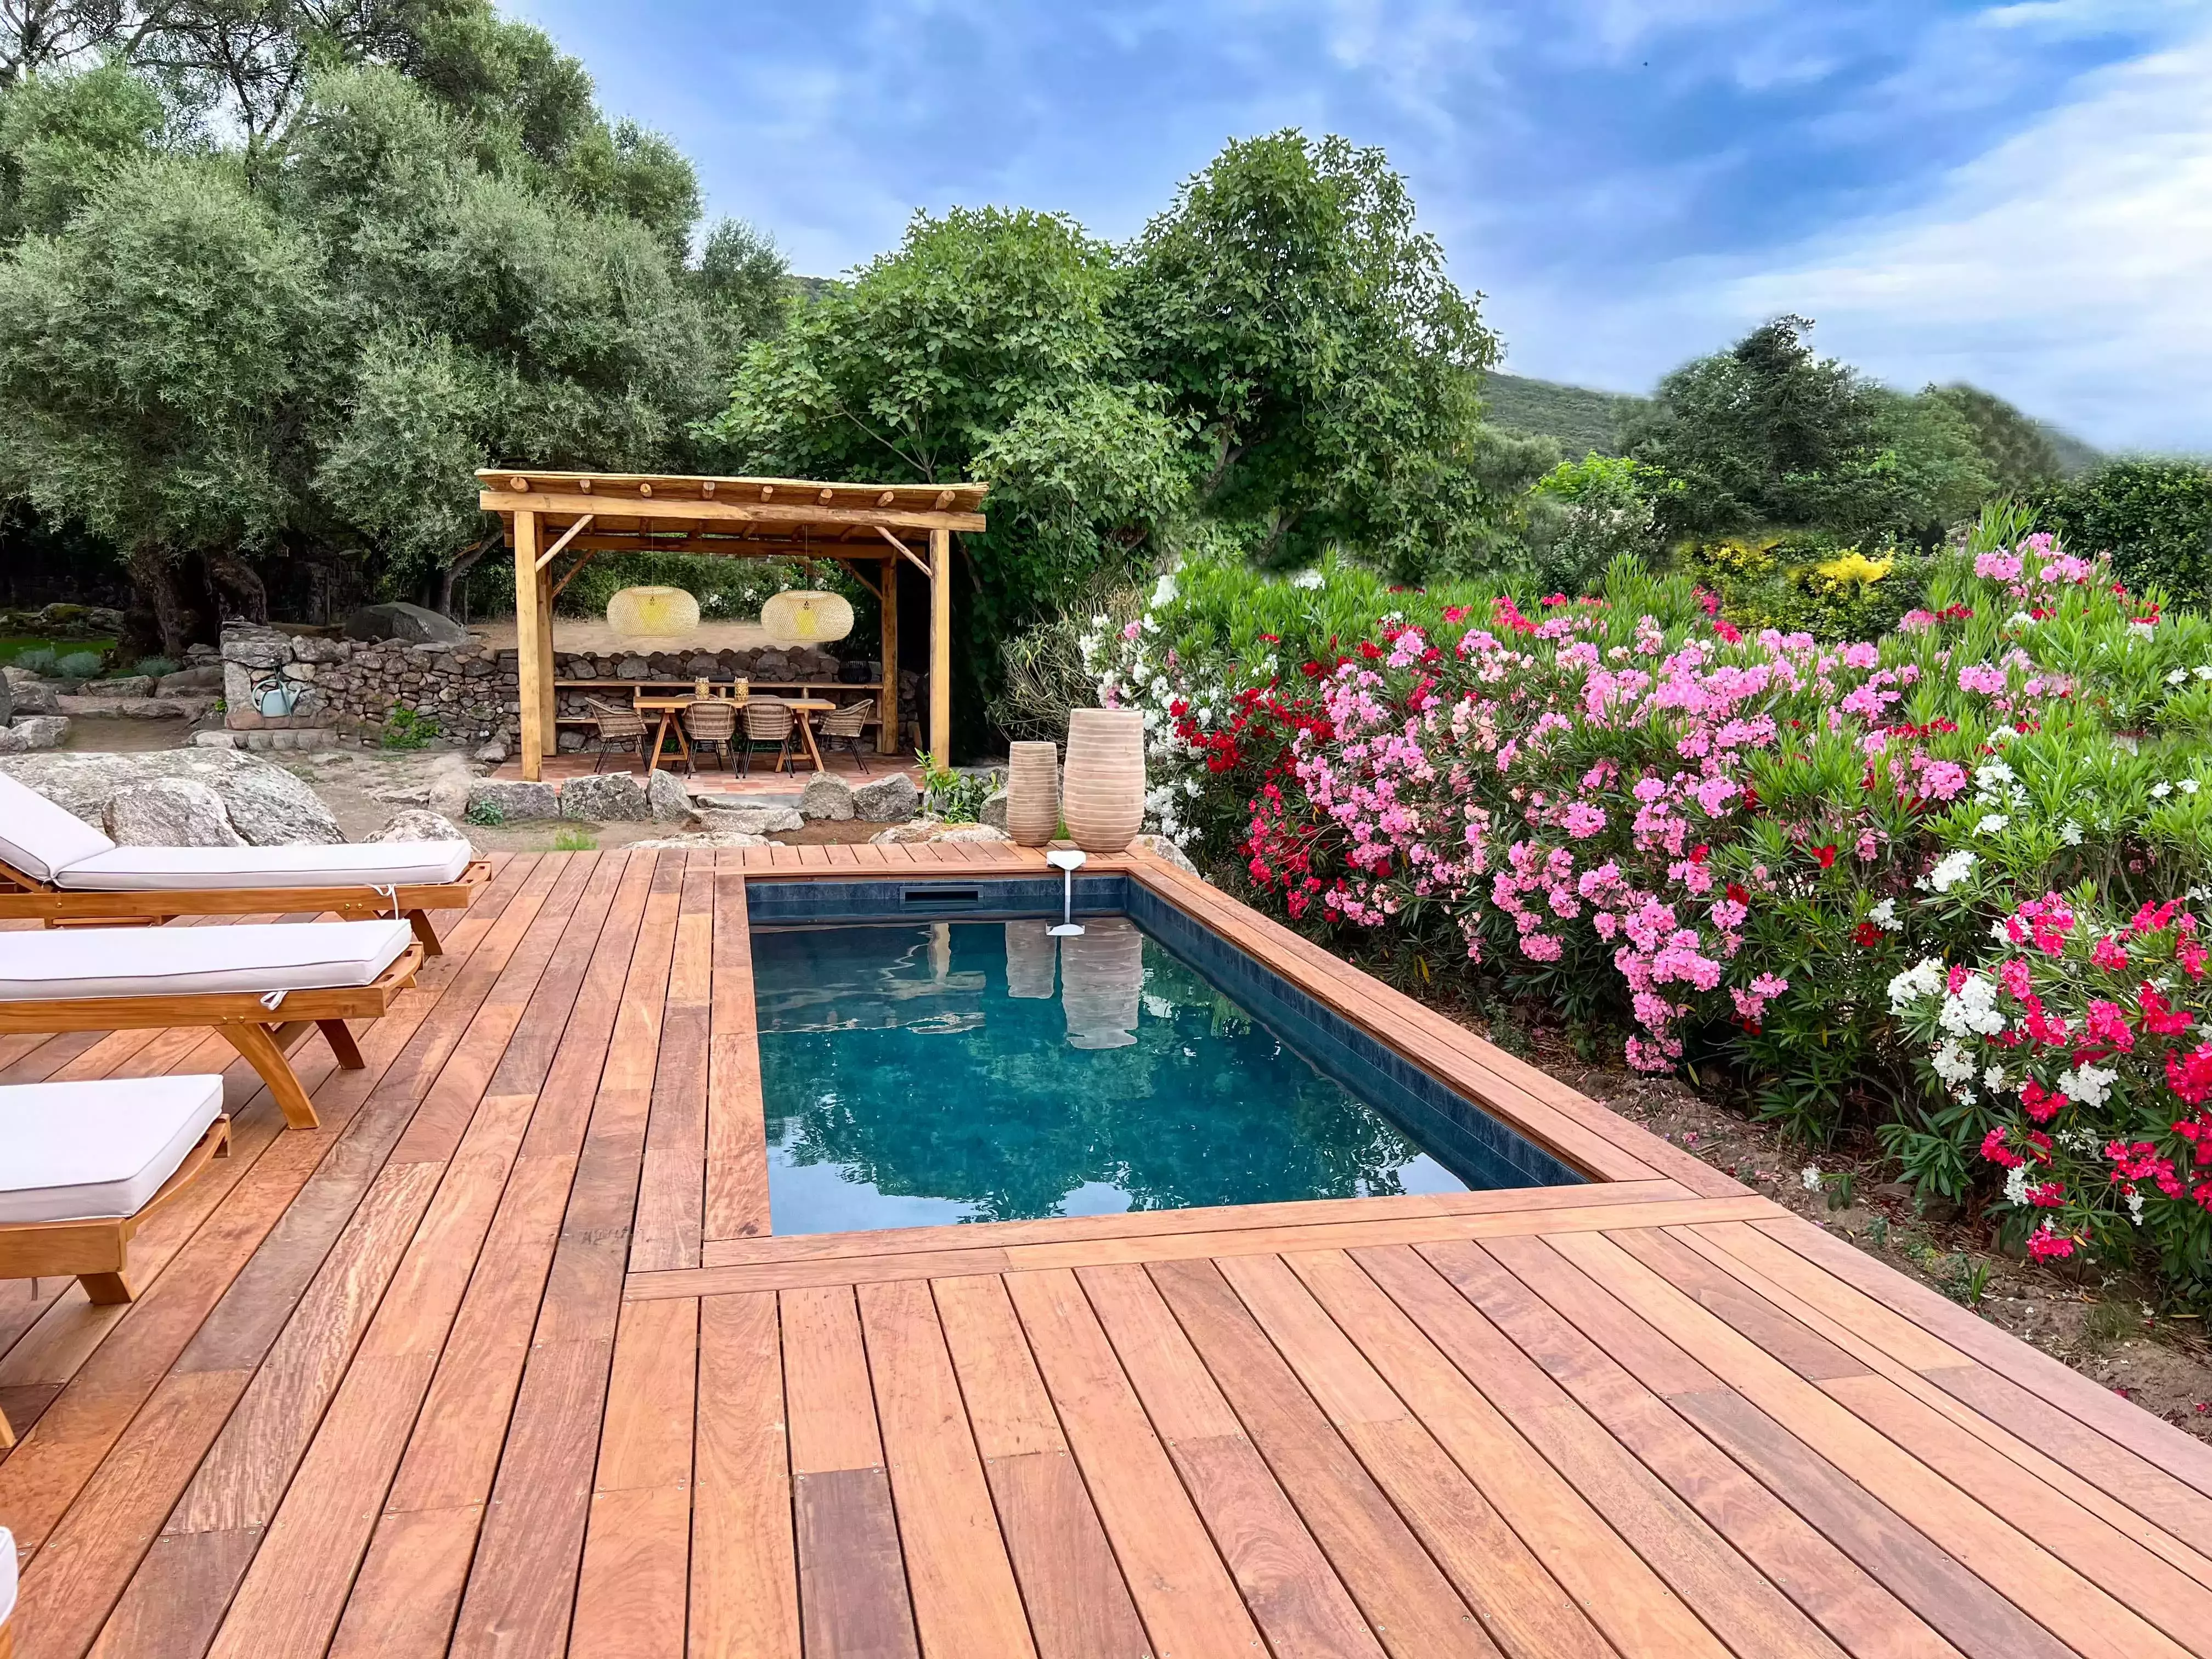 L'aménagement d'une piscine moderne au sein d'un jardin pittoresque d'une ancienne bergerie corse, une tâche confiée à nos spécialistes.